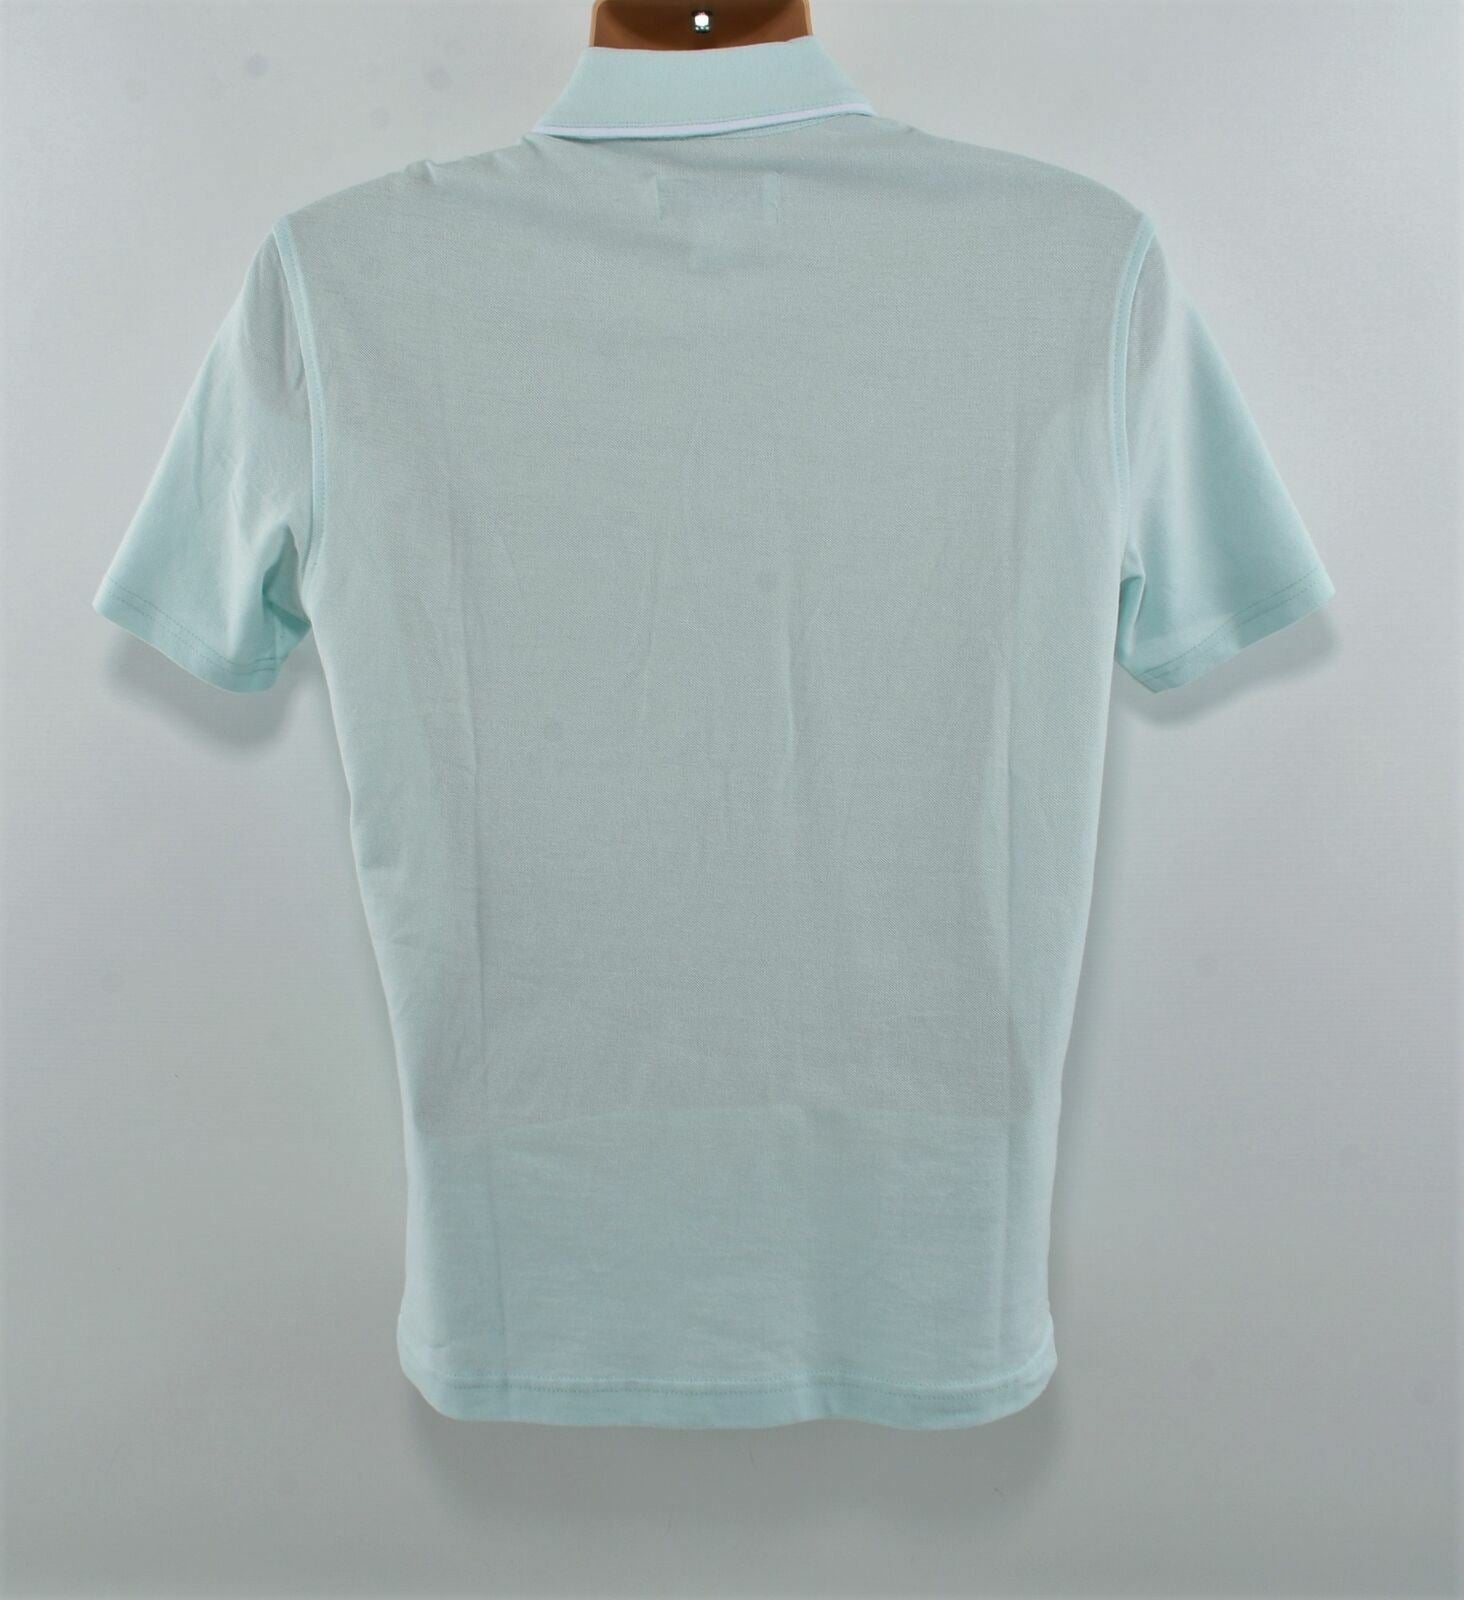 PENGUIN Men's Pastel Blue Cotton Polo Shirt- Size Small